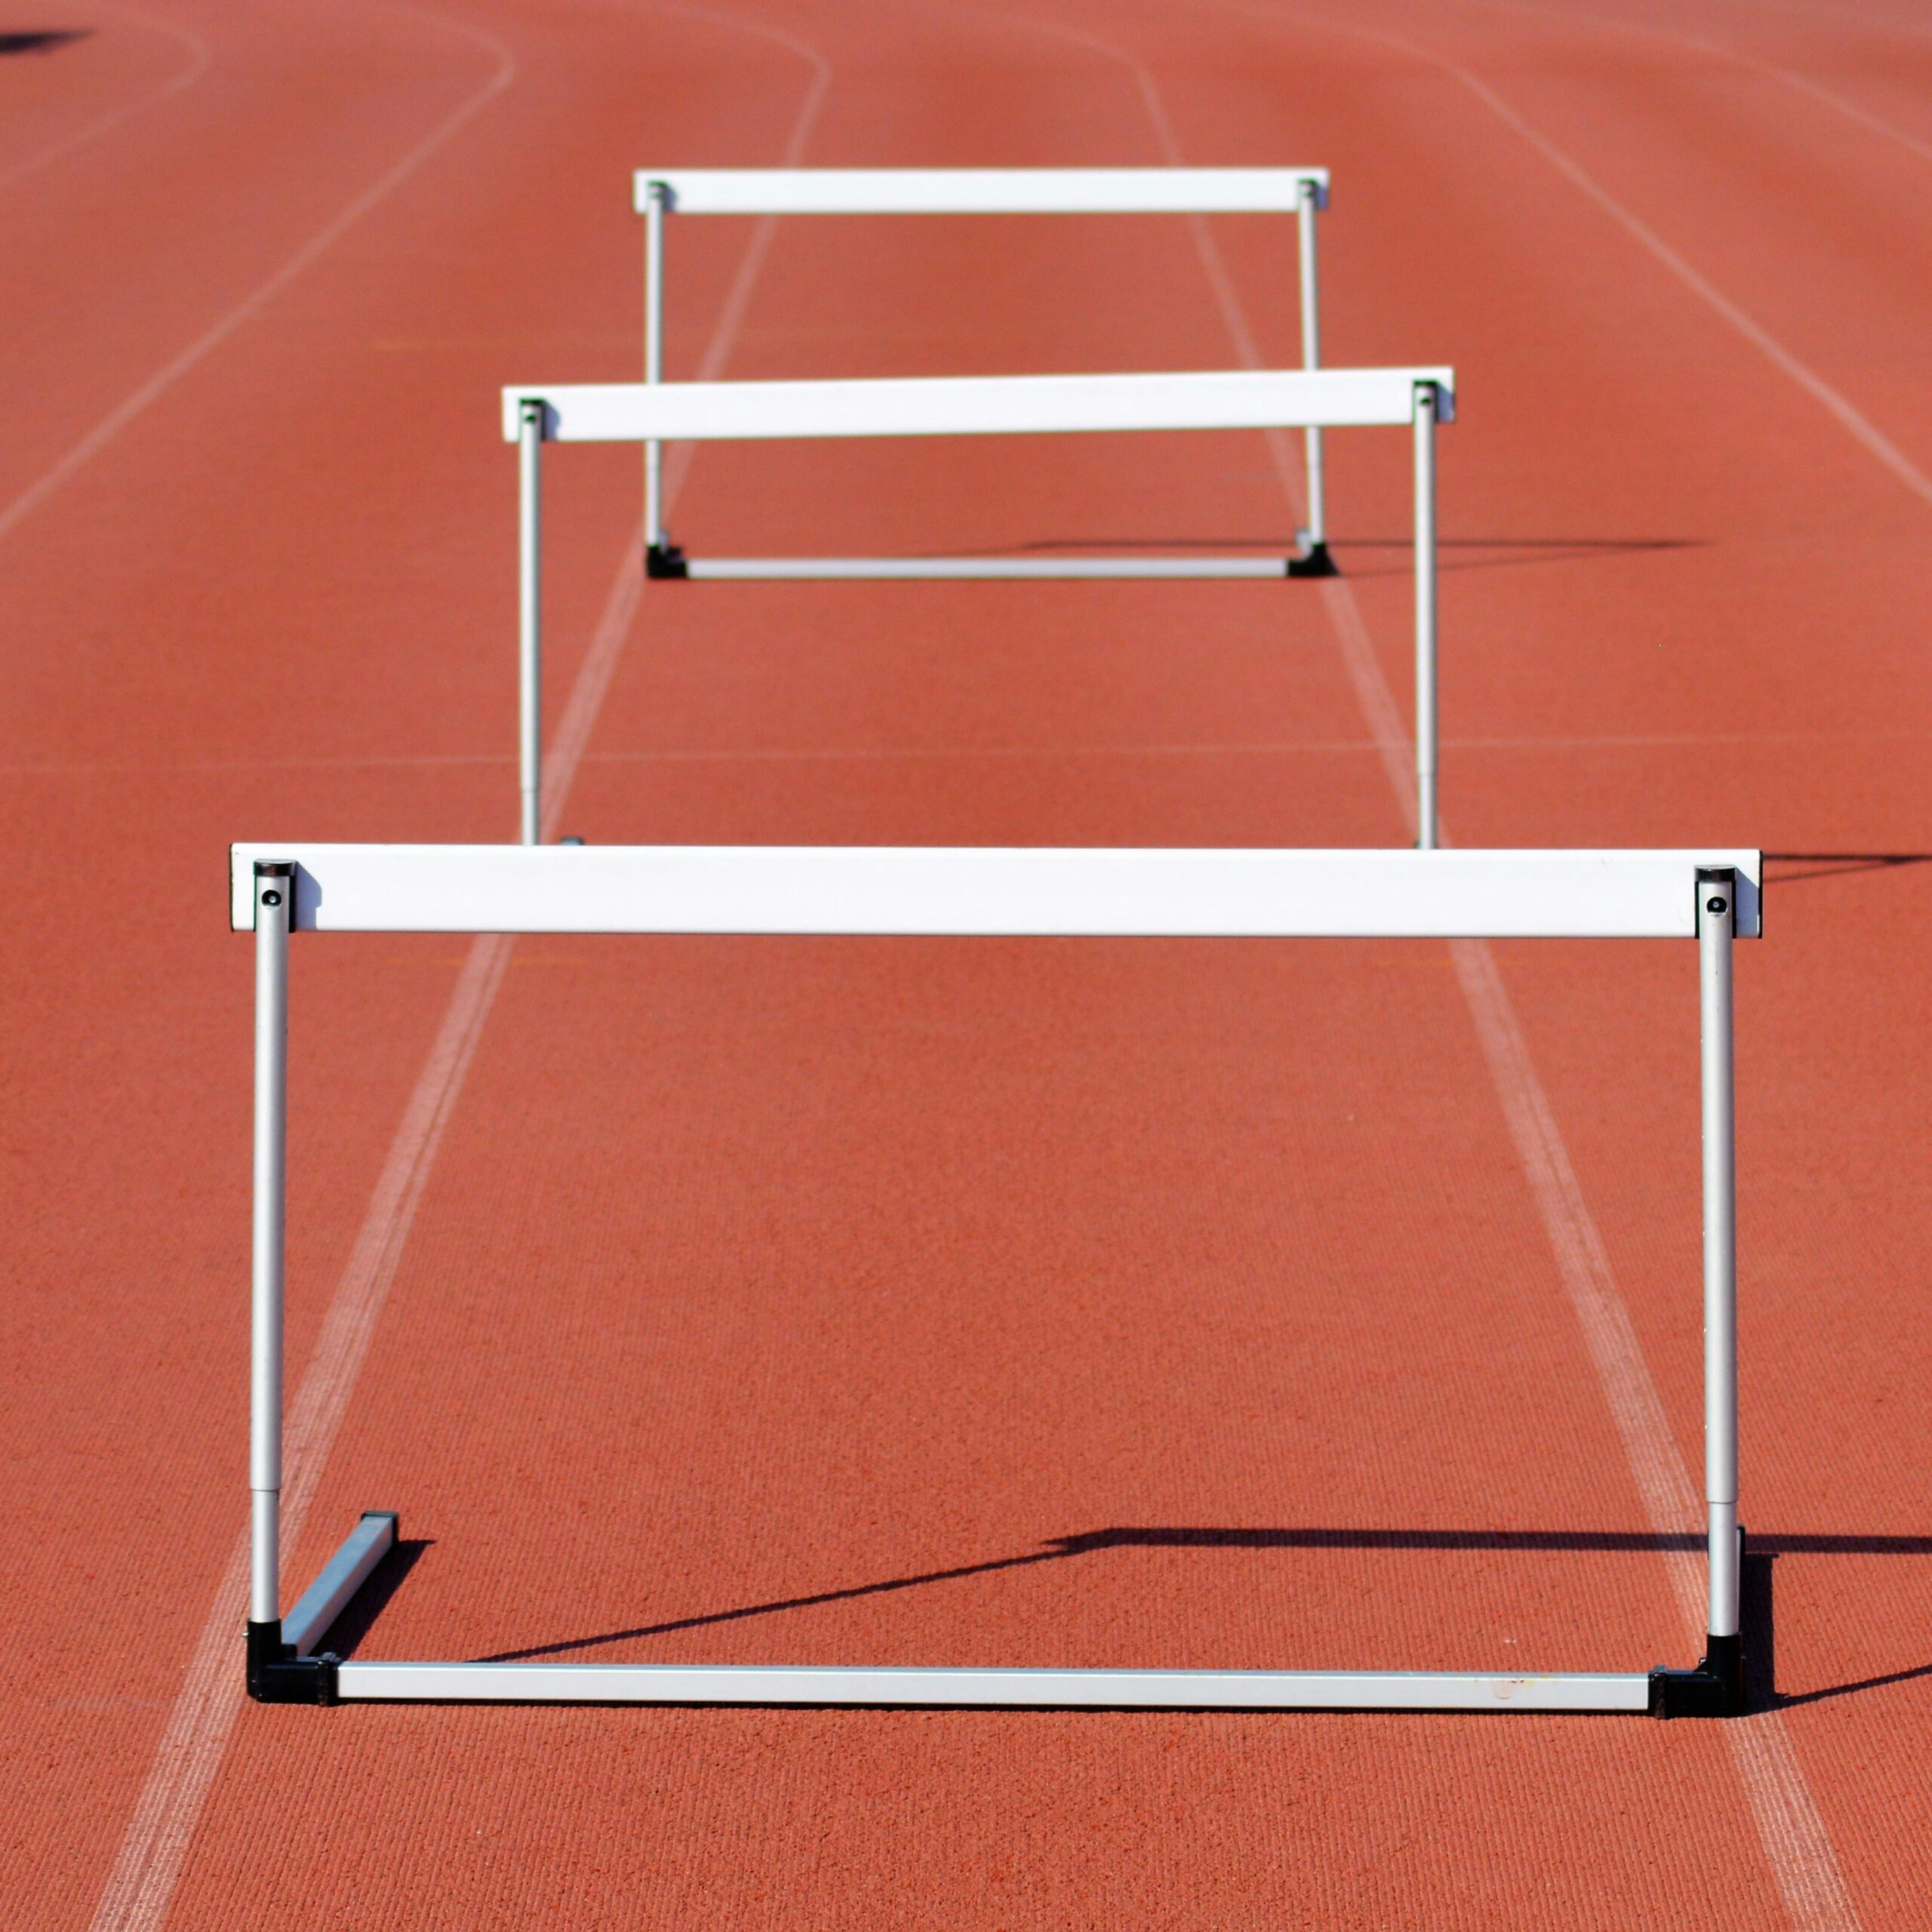 Three hurdles on a running track, illustrating the hurdles of mastering social media